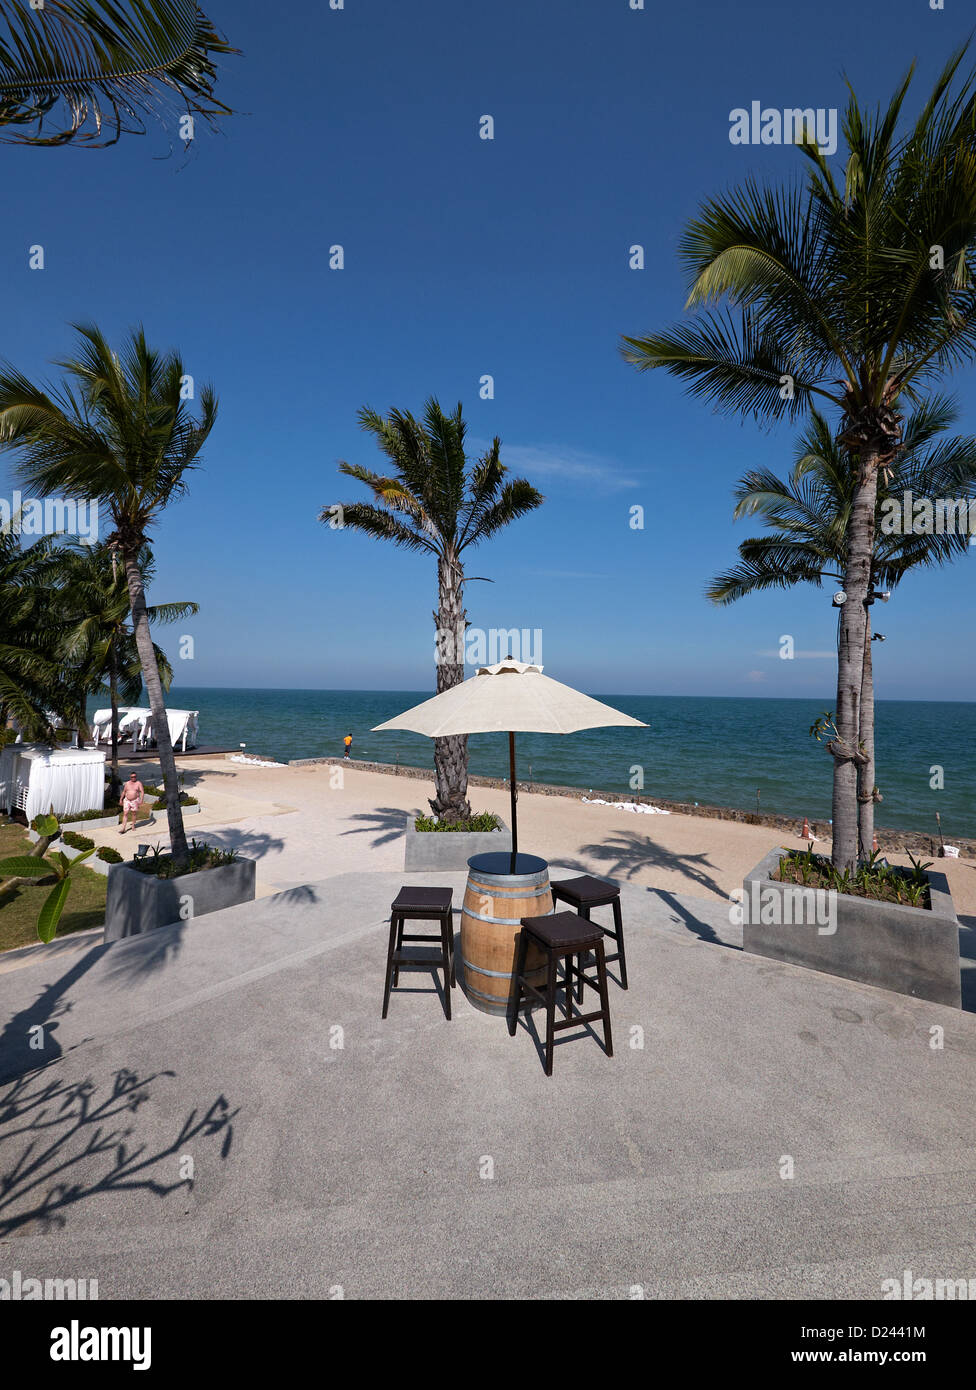 Scena tropicale che si affaccia sul mare con palme e ombrelloni. Tailandia hotel resort SUDEST ASIATICO Foto Stock